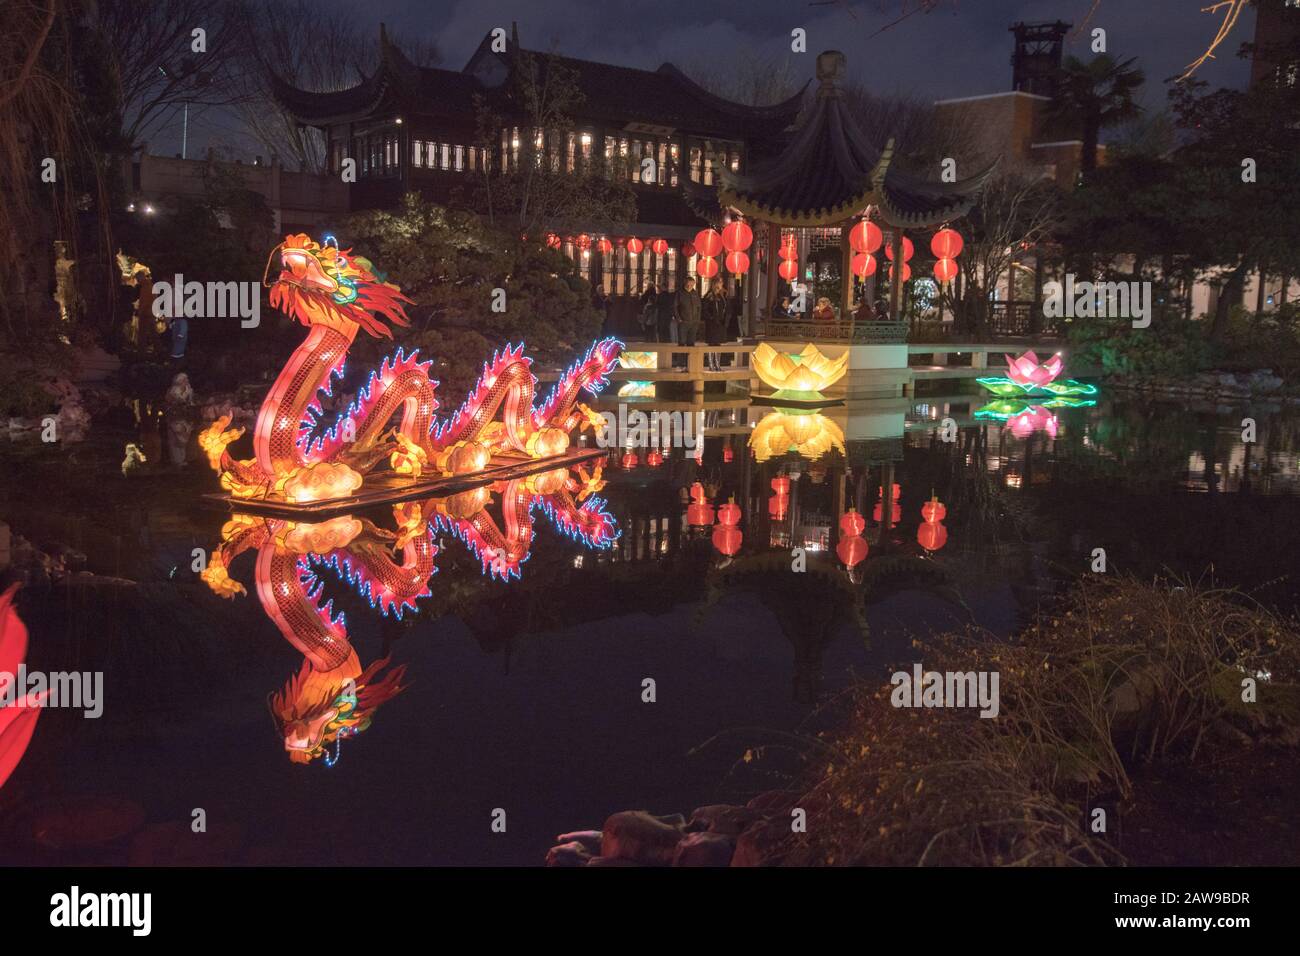 La celebrazione del Capodanno cinese lunare presso Il Lan su Gardens di Portland, Oregon, è piena di luce e dramma. Foto Stock